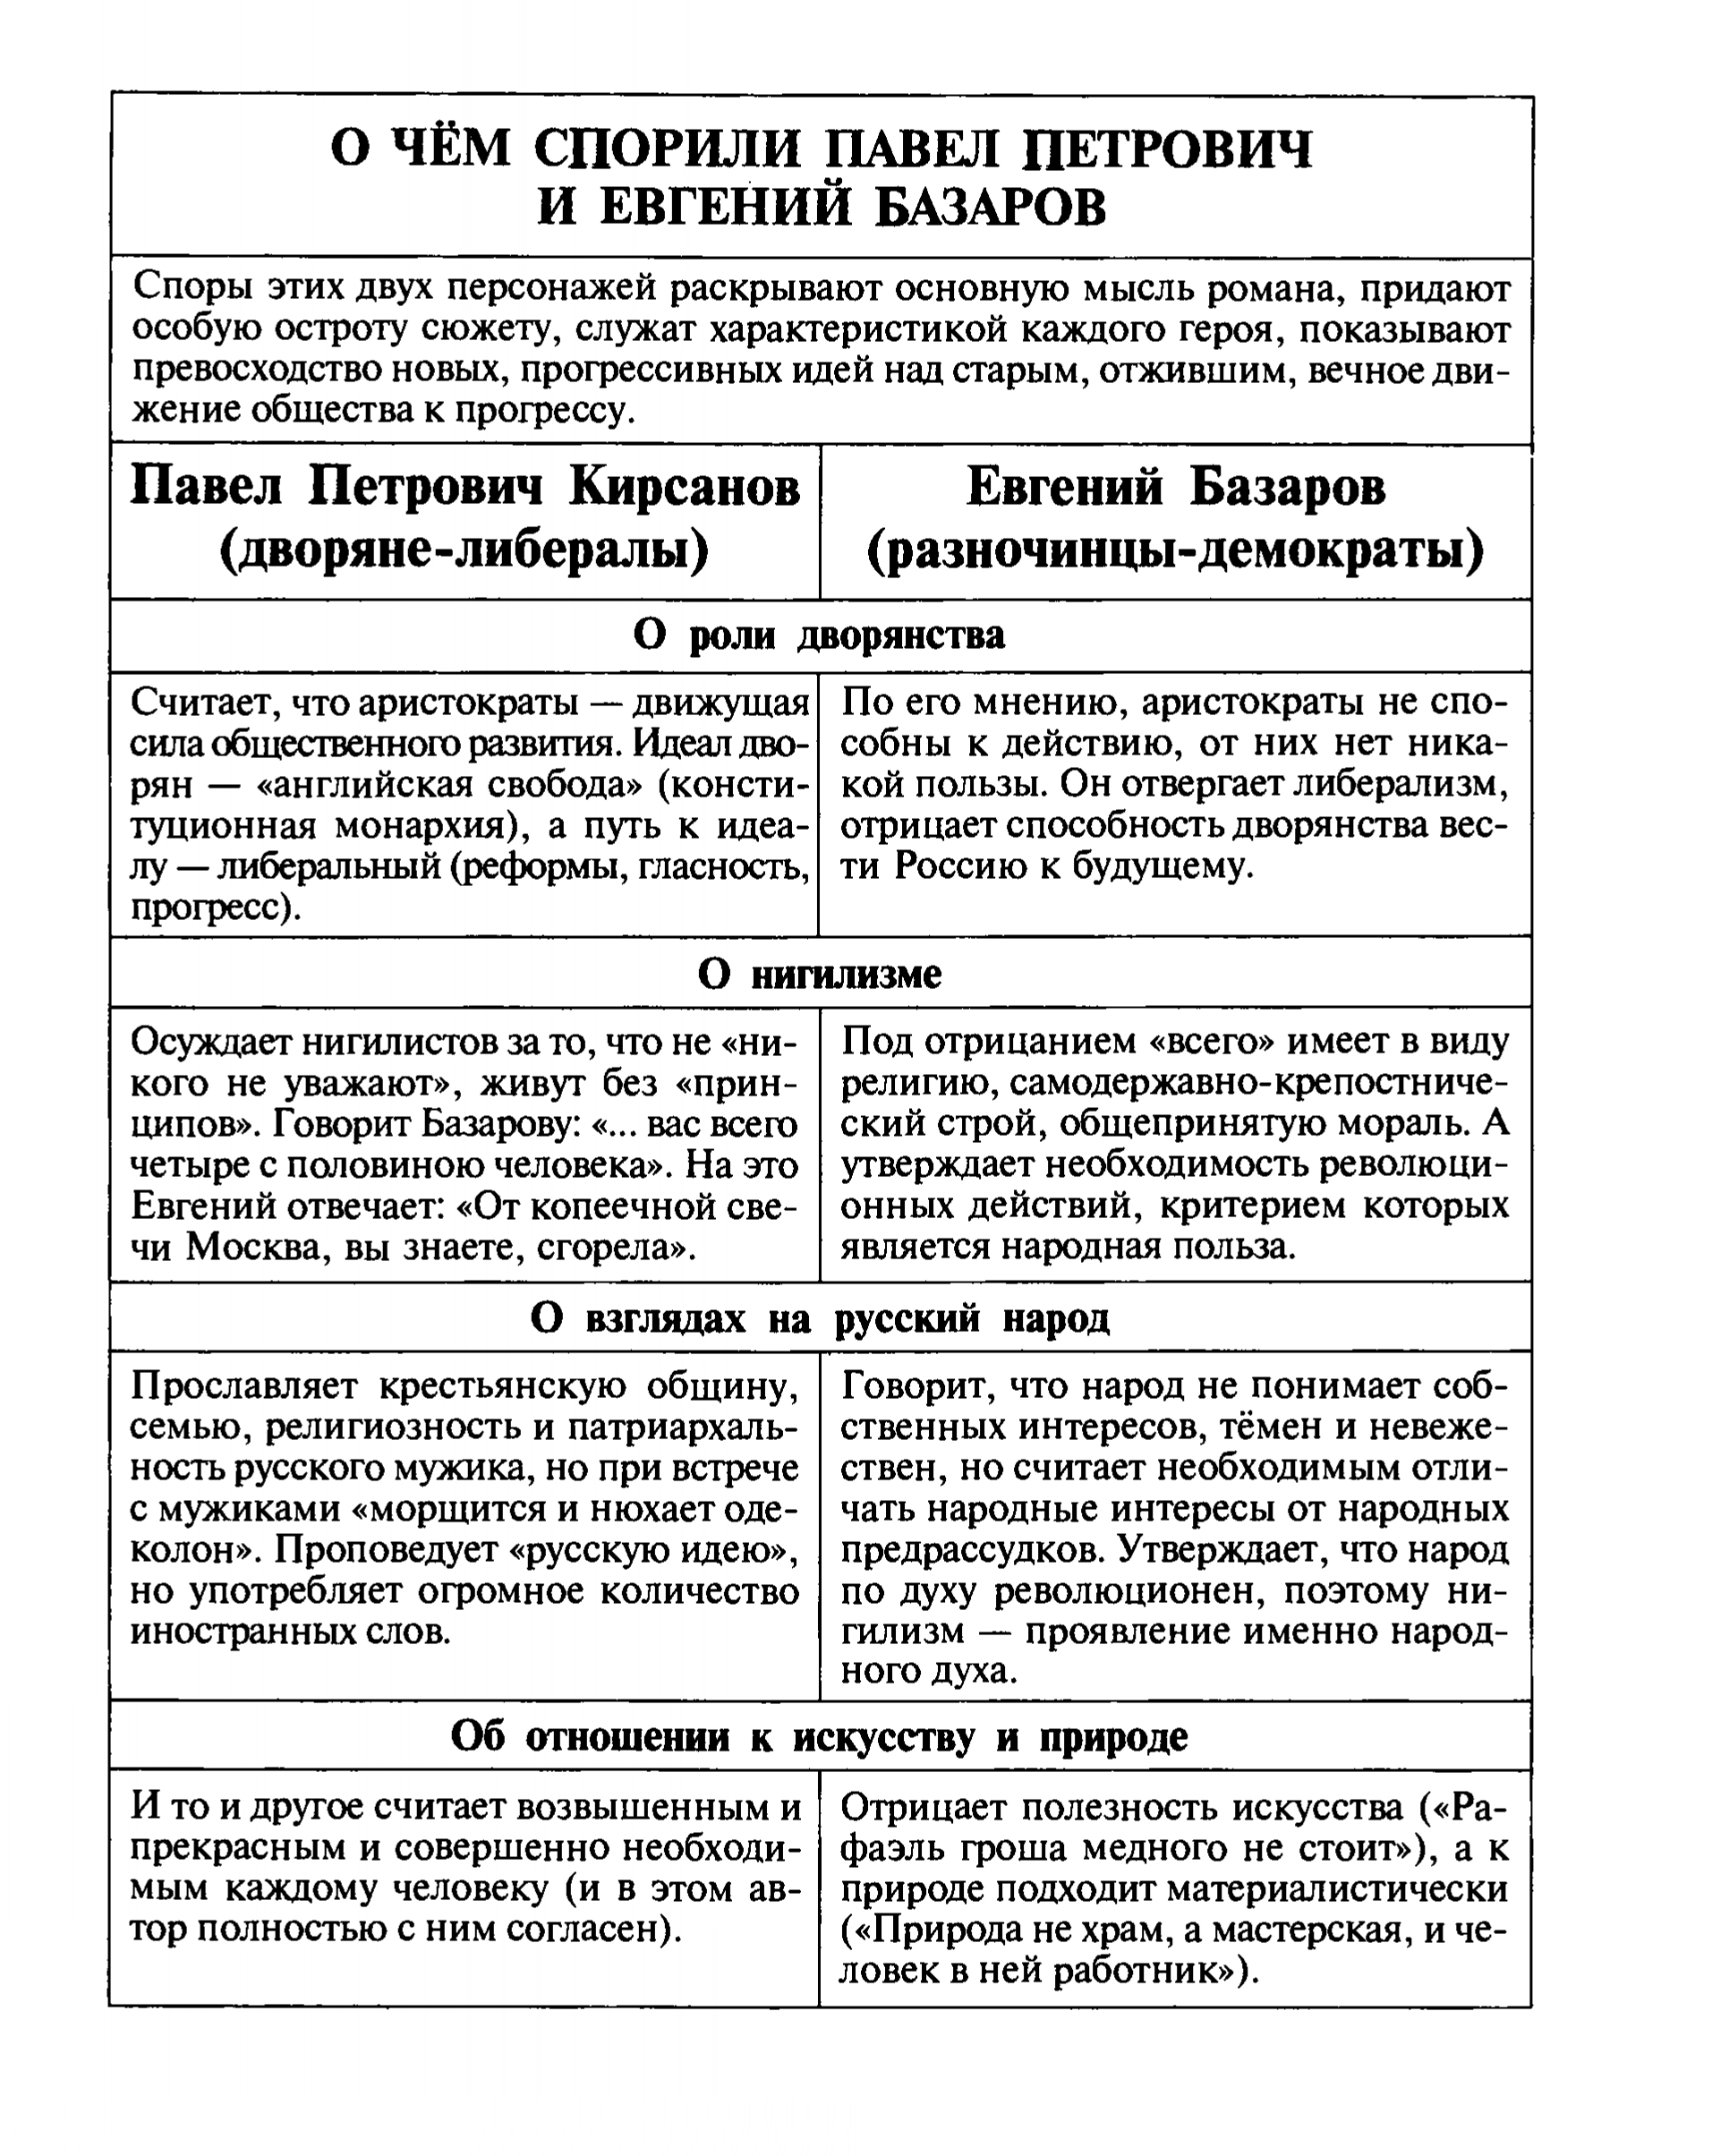 О чем спорили Павел Петрович и Базаров? (таблица)